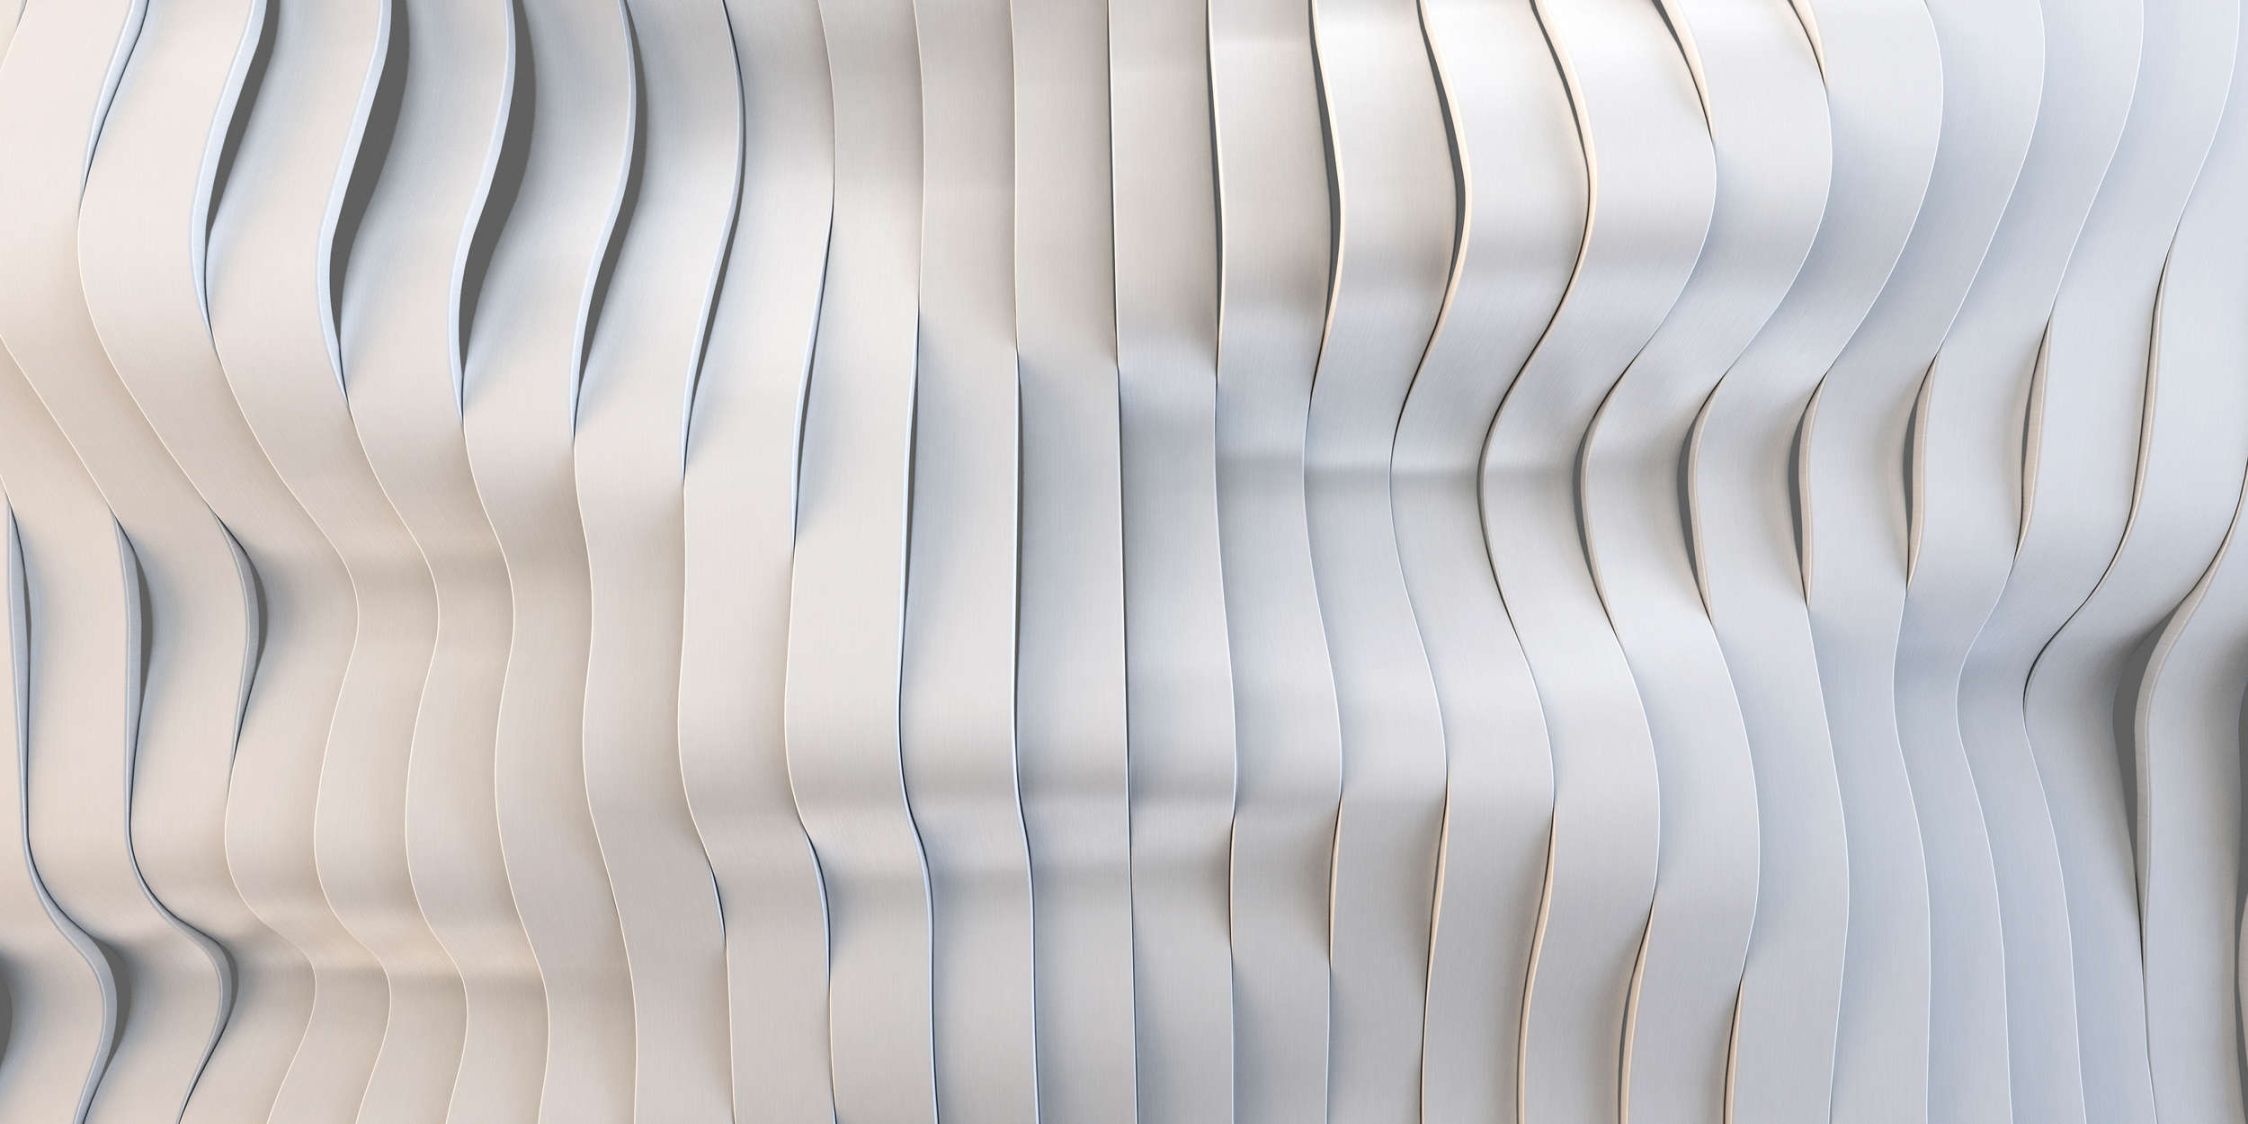             solaris 1 - papier peint en papier au design futuriste de lignes électriques - intissé légèrement structuré
        